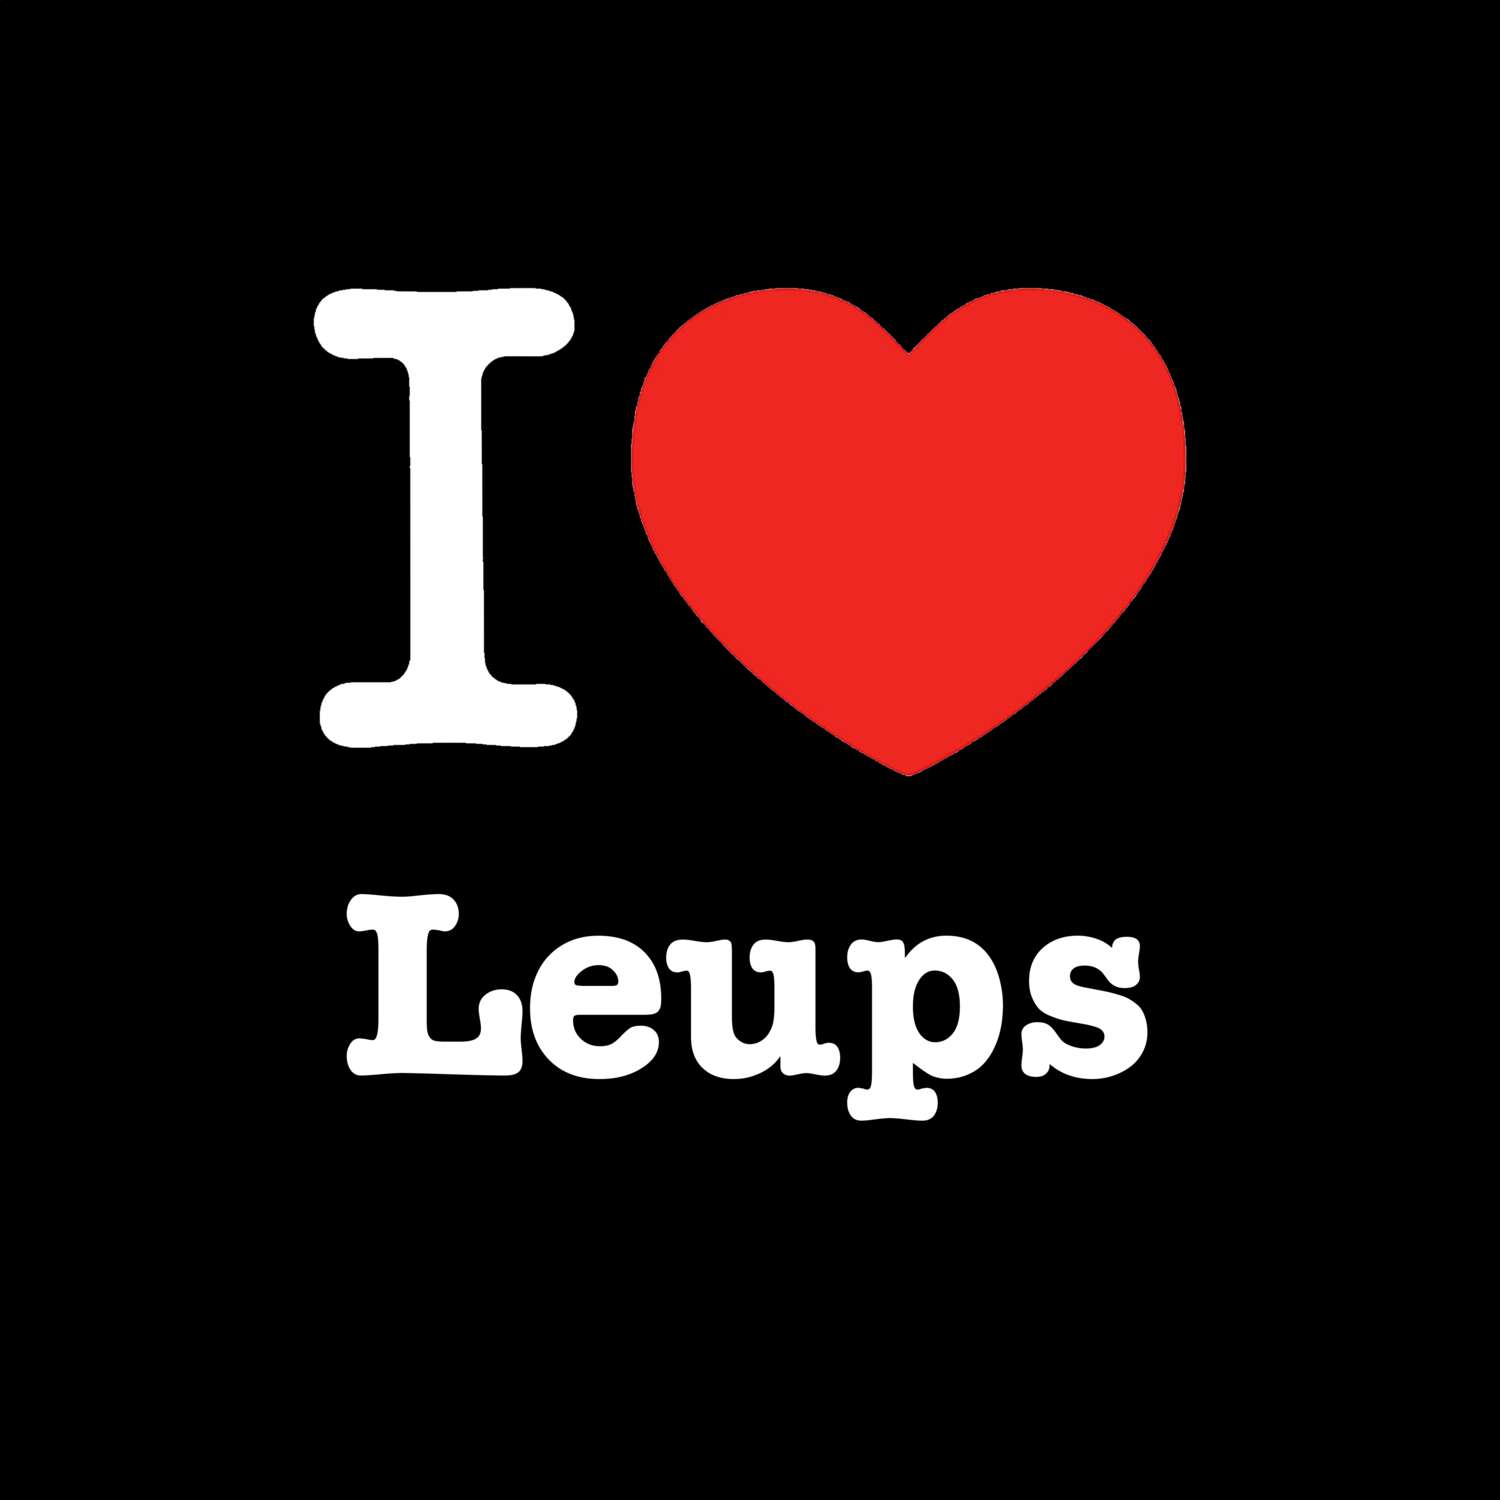 Leups T-Shirt »I love«